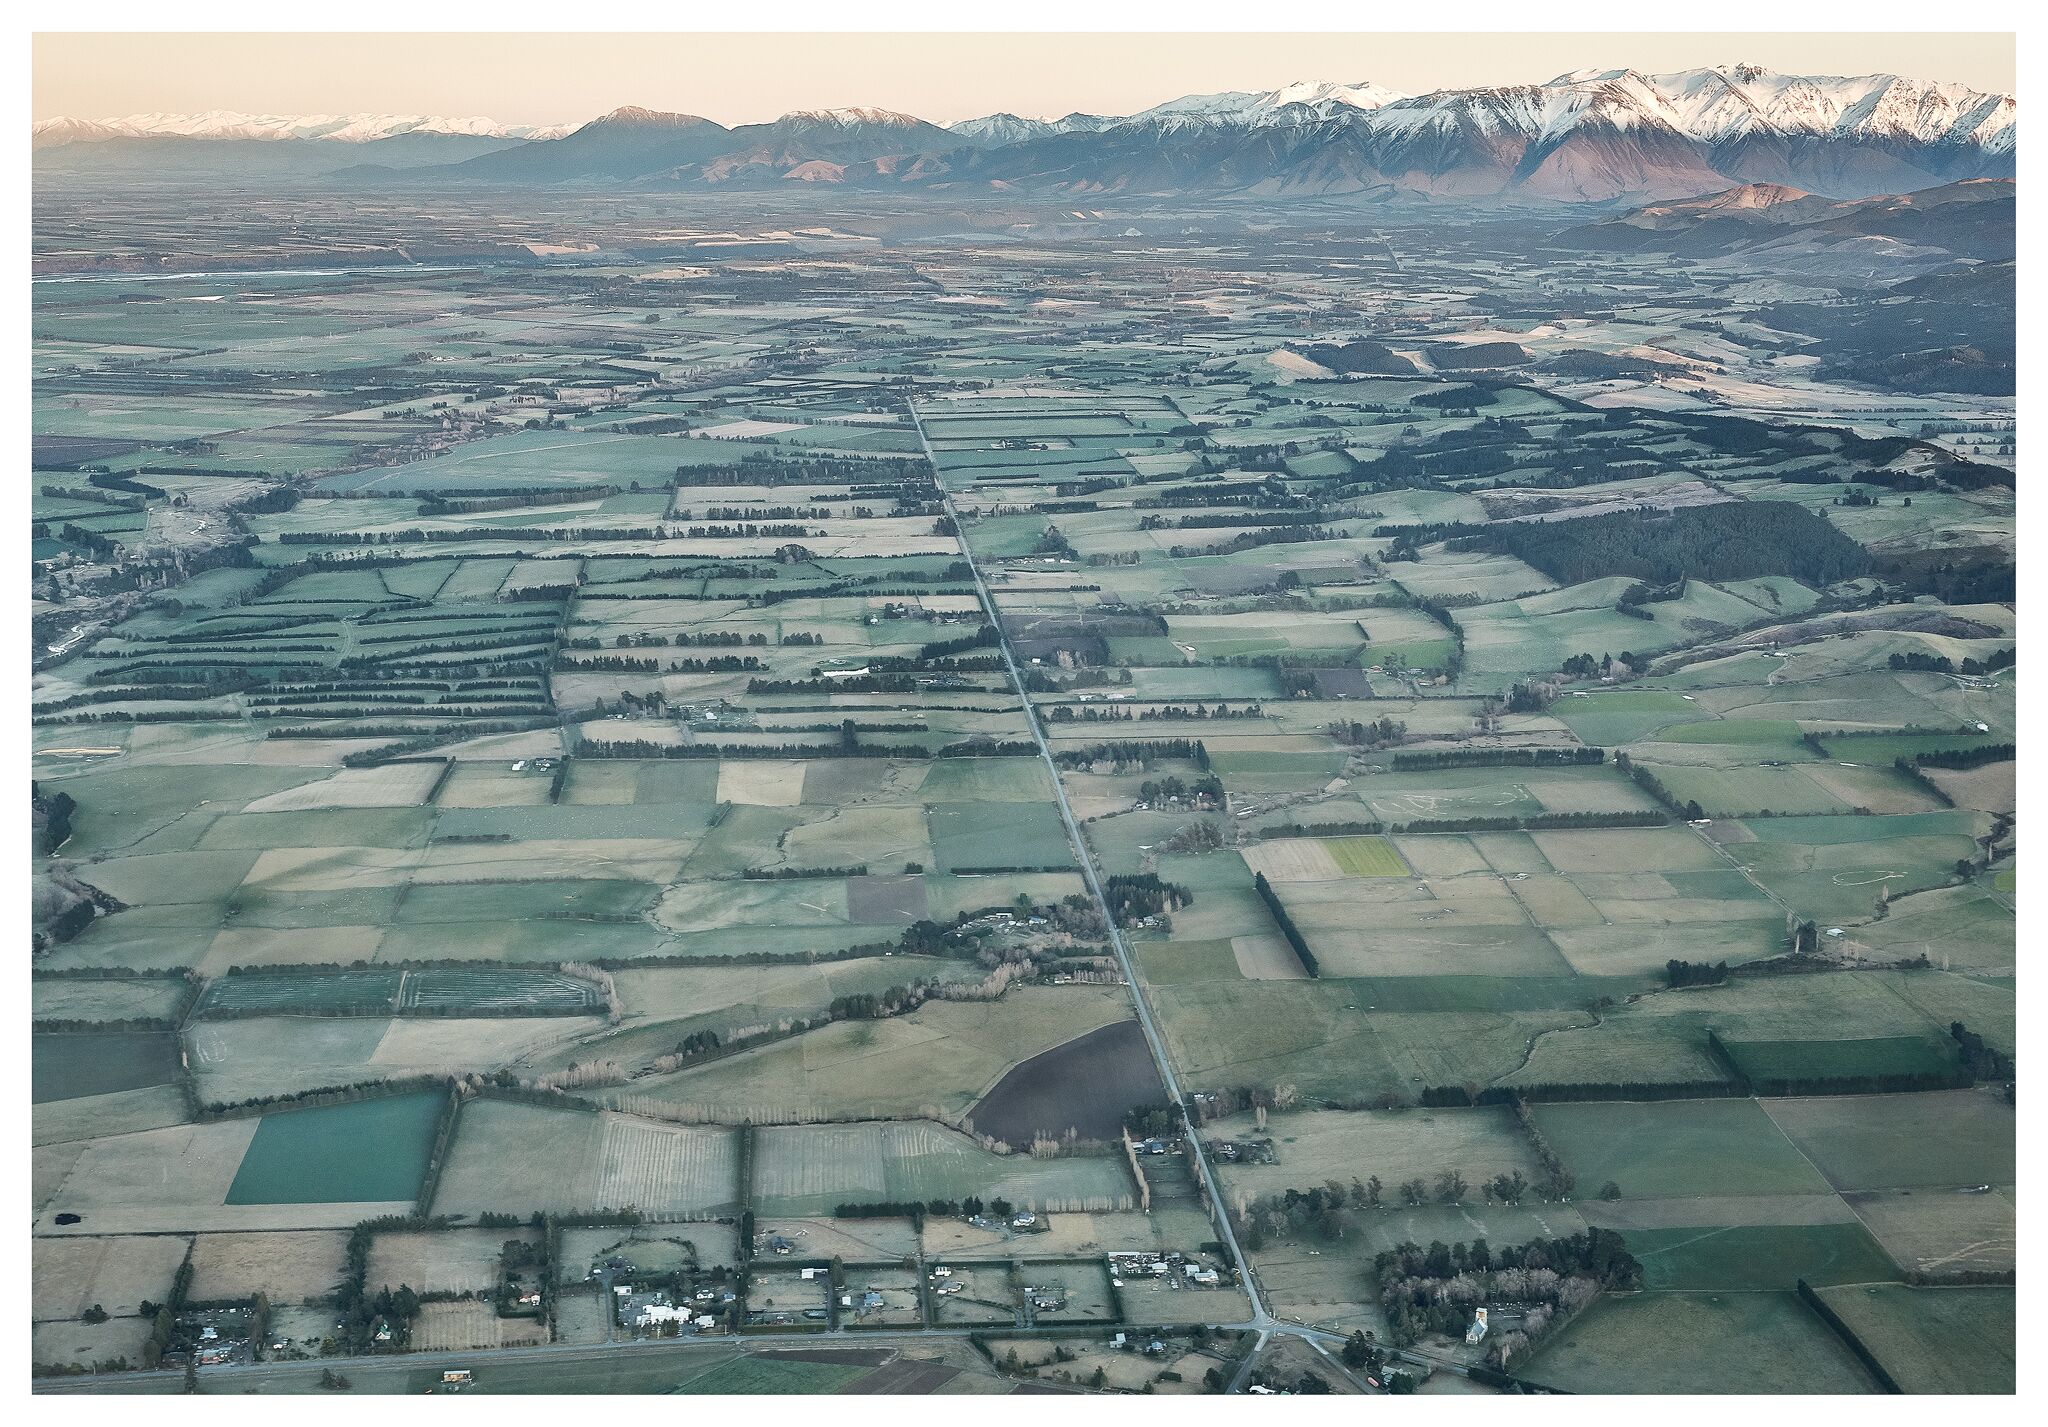 Farmland in New Zealand, courtesy Jose Ahedo